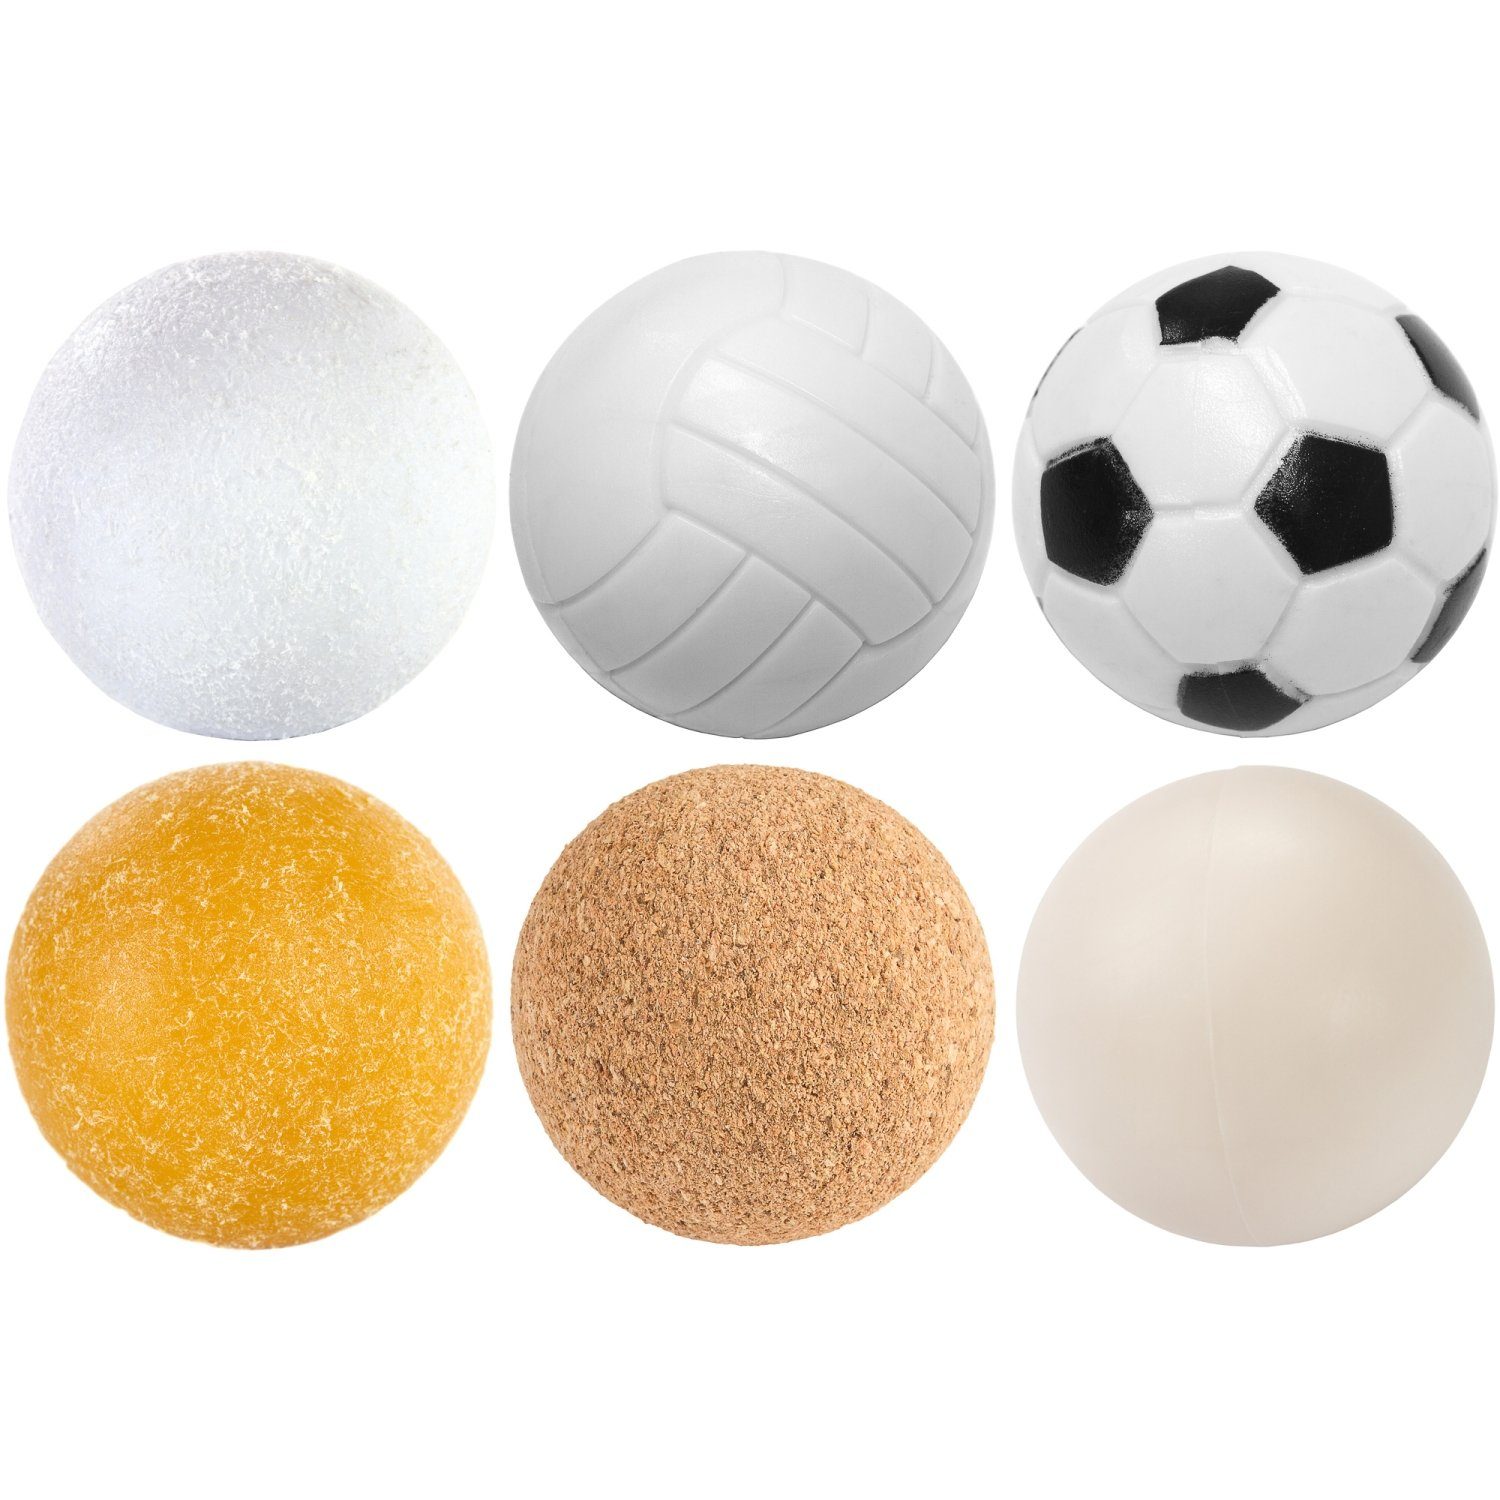 PE,PU, Kickerbälle, Games oder 12 Kickerbälle Sorten GAMES 35mm, (Kork, Kunststoff), Tischfussball Stück Durchmesser Ball (Set), unterschiedliche Spielball Mischung, Planet PLANET 6 6